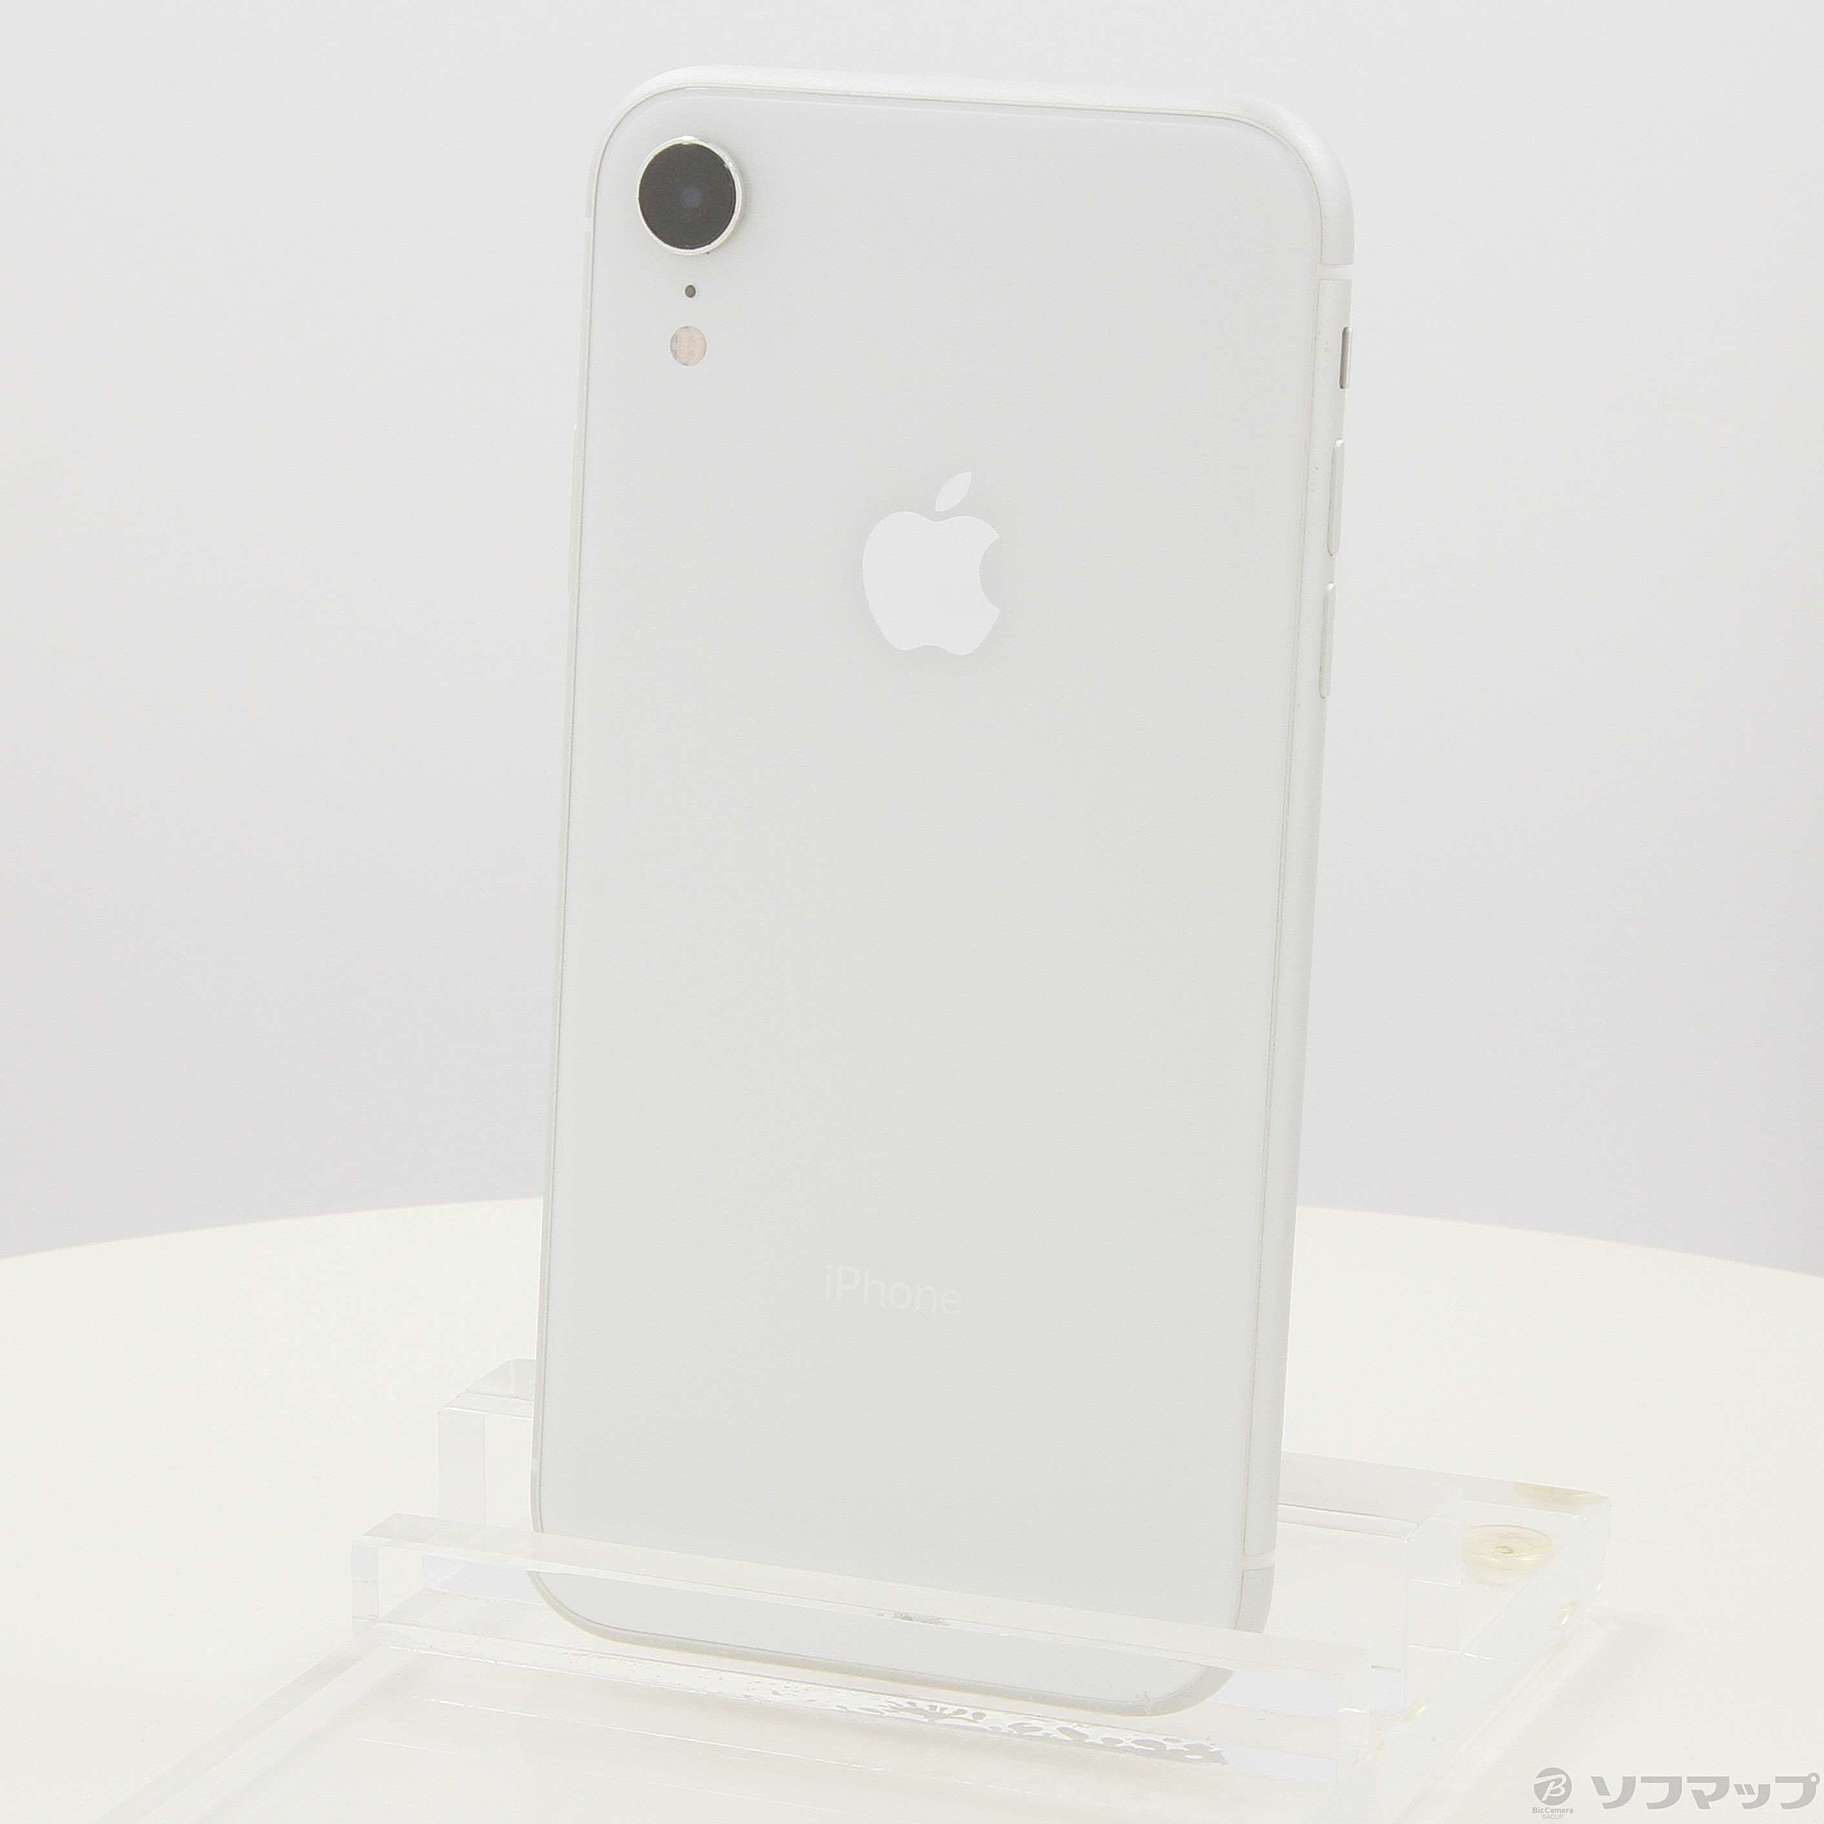 au 【SIMロックなし】MT032J/A iPhone XR 64GB ホワイト au - 携帯電話 